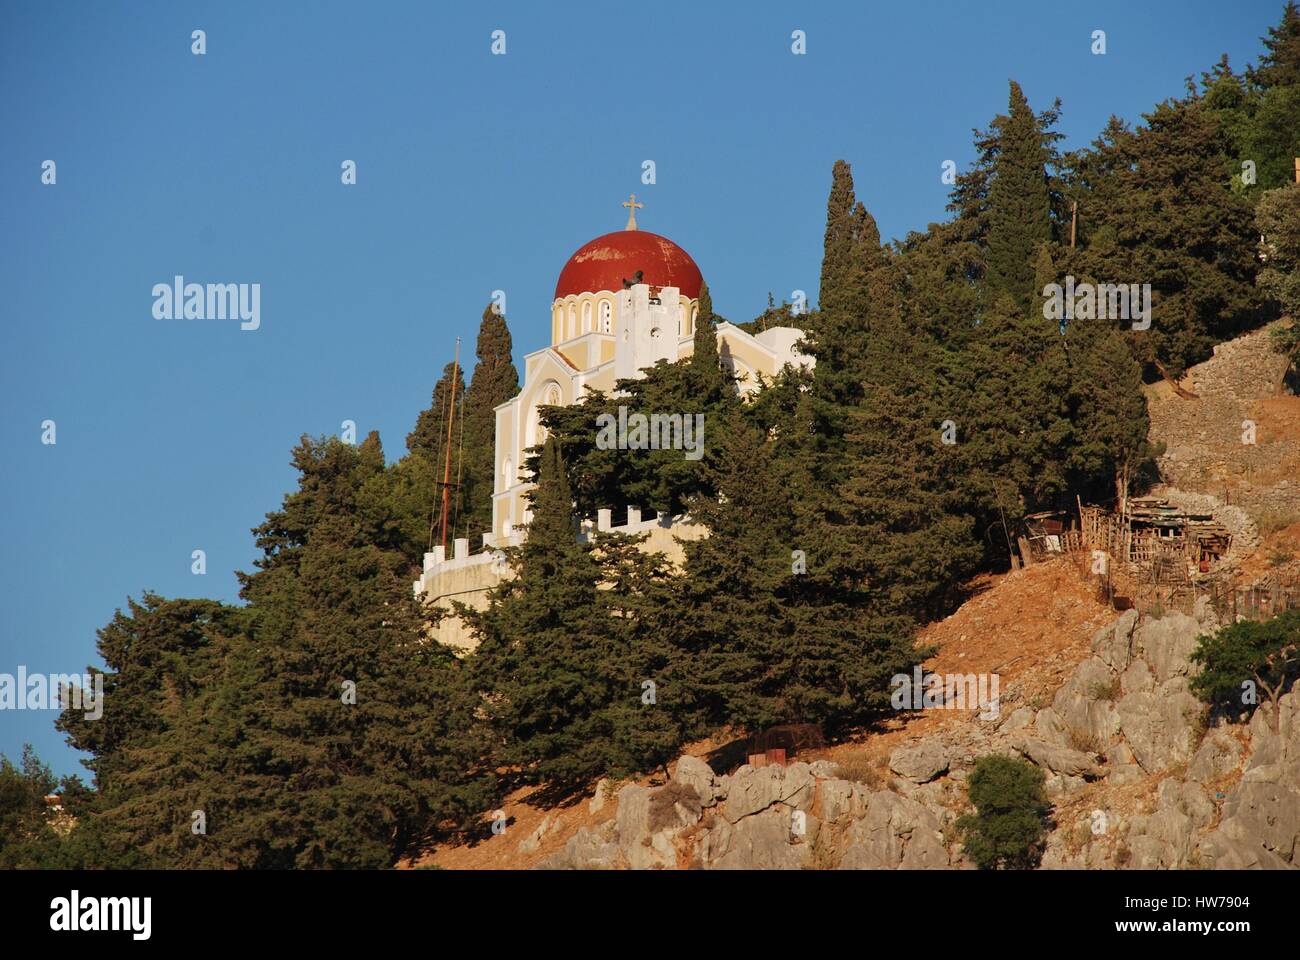 Una chiesa sulle colline sopra Yialos sull'isola greca di Symi. Foto Stock